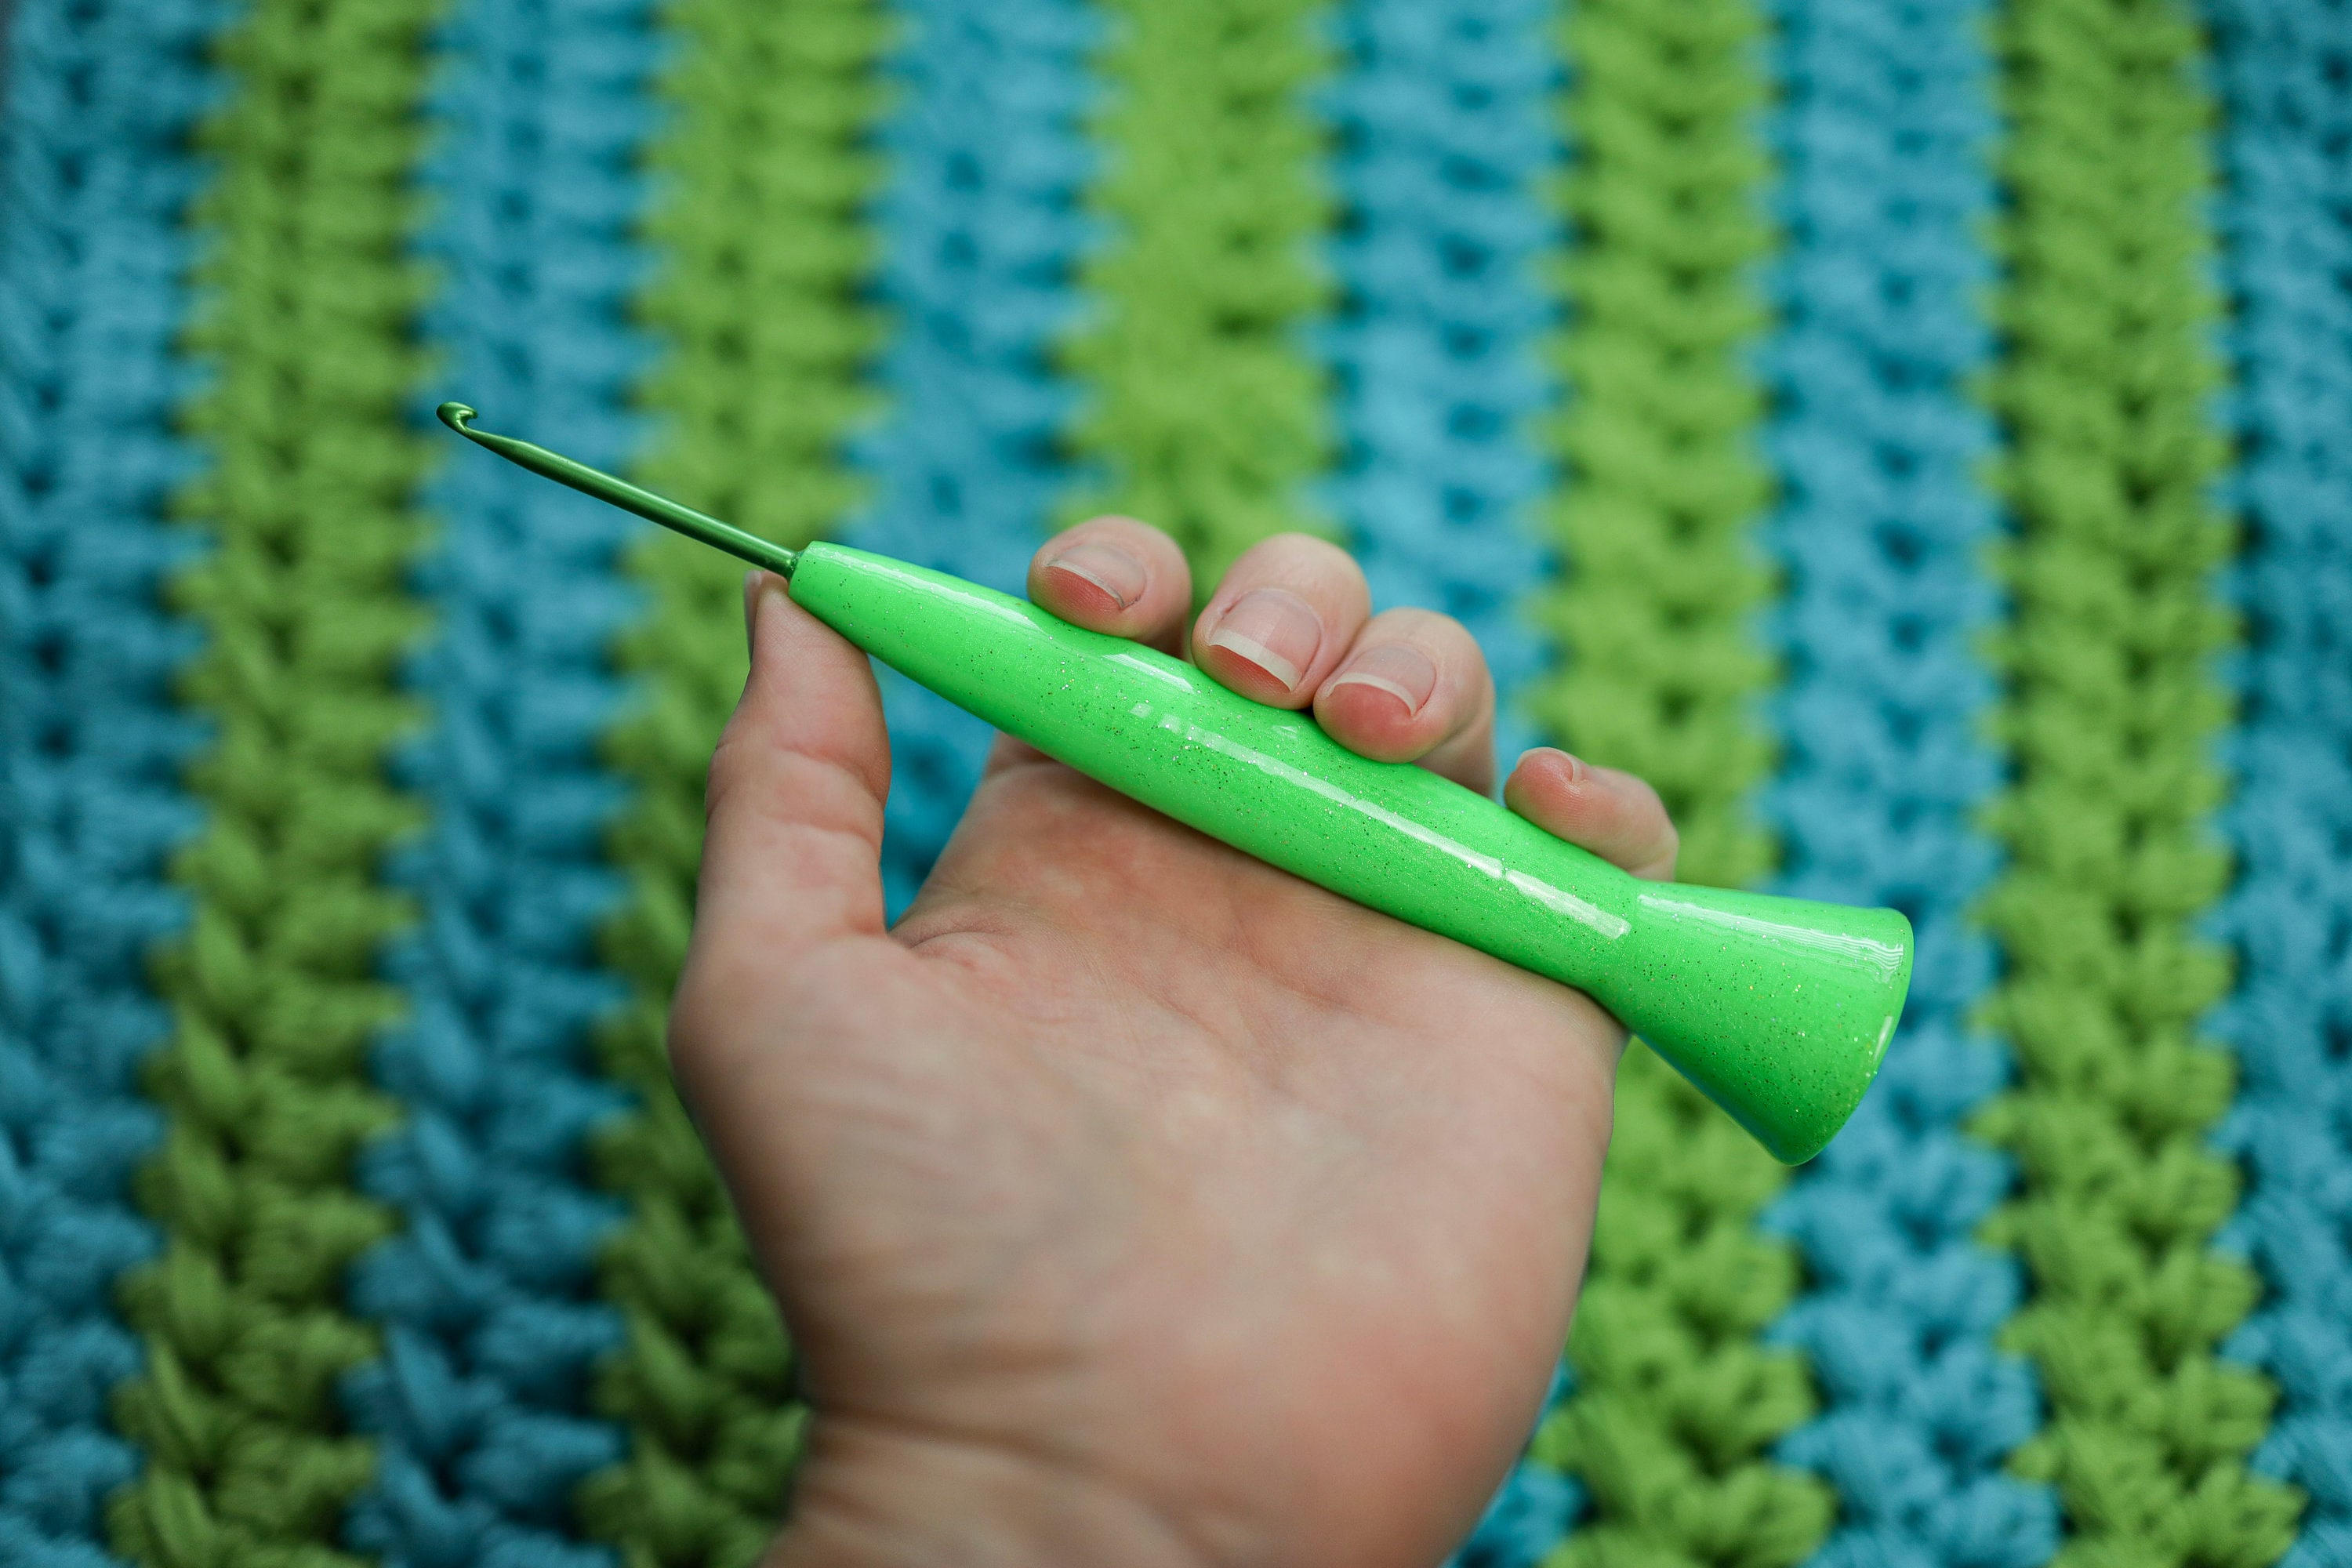 15mm Crochet Hook - 3D model by IzzyDo on Thangs